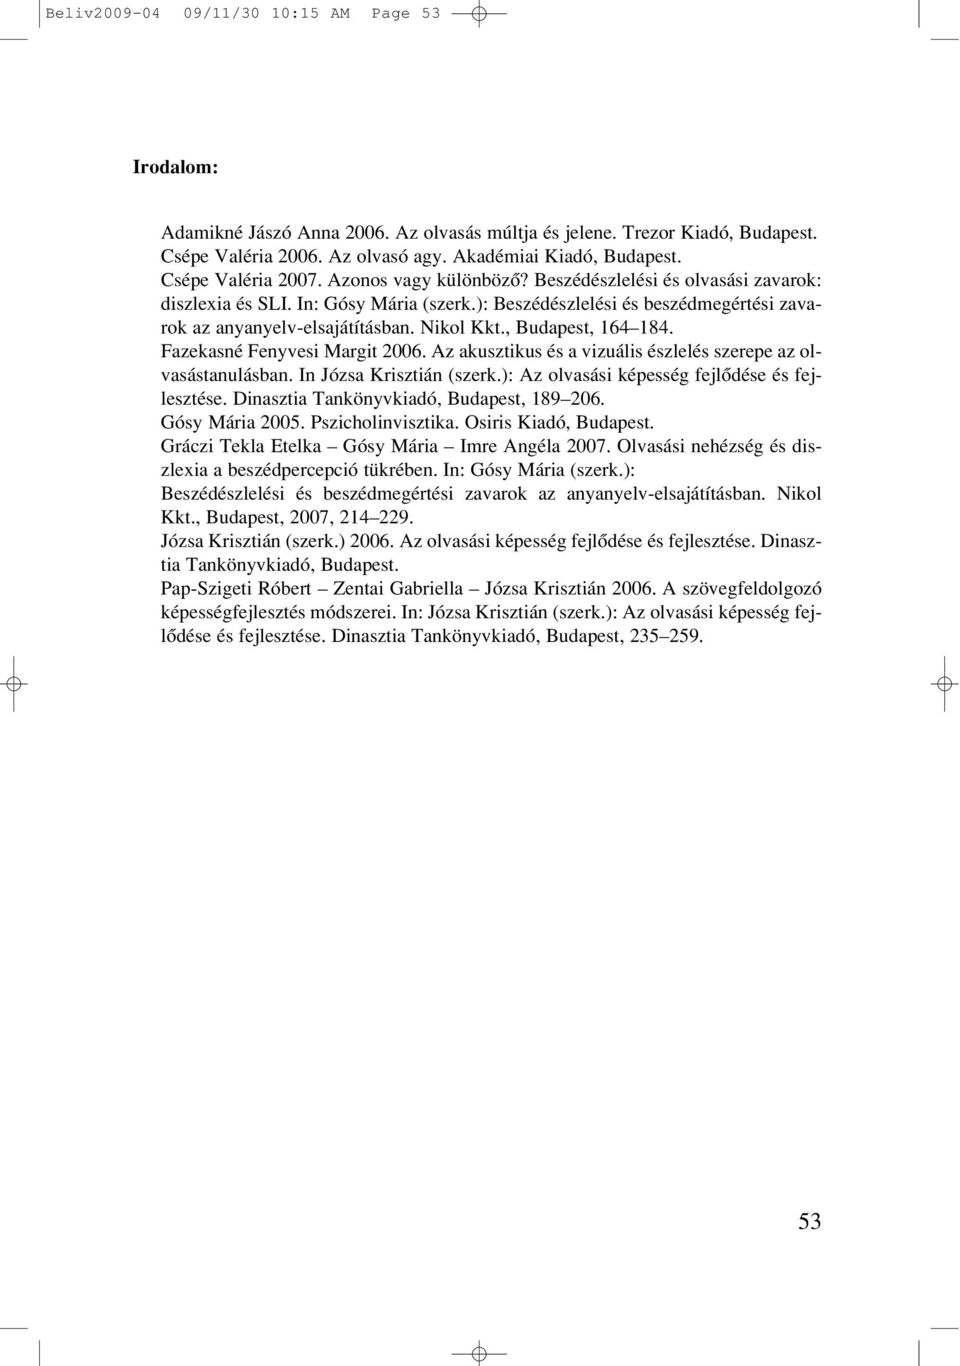 Nikol Kkt., Budapest, 164 184. Fazekasné Fenyvesi Margit 2006. Az akusztikus és a vizuális észlelés szerepe az olvasástanulásban. In Józsa Krisztián (szerk.